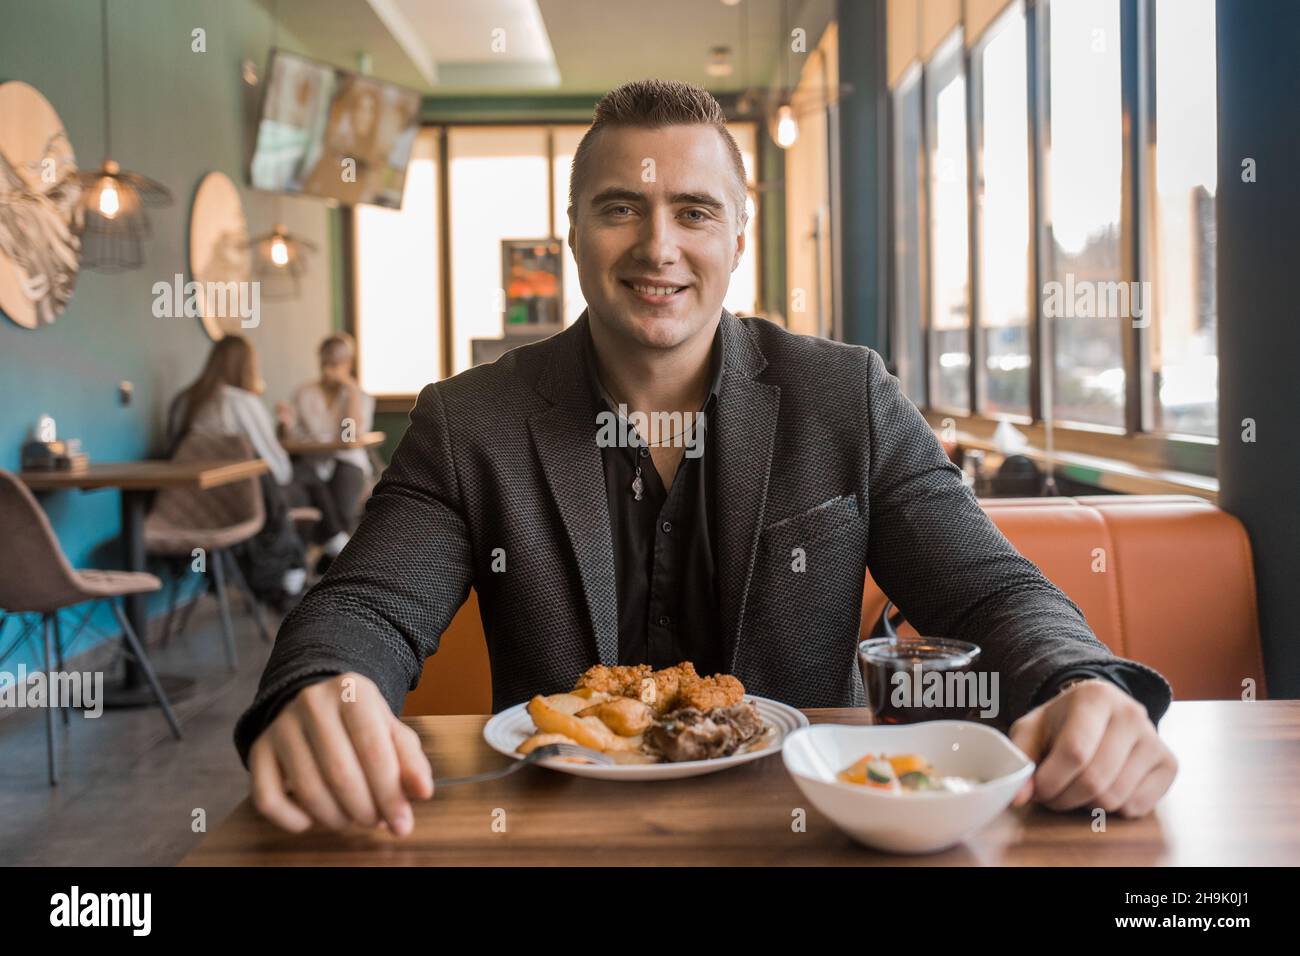 In einer Mittagspause sitzt ein junger zufriedener Mann, der einen Geschäftsmann in einer Jacke porträtiert, an einem Tisch in einem Café. Stockfoto